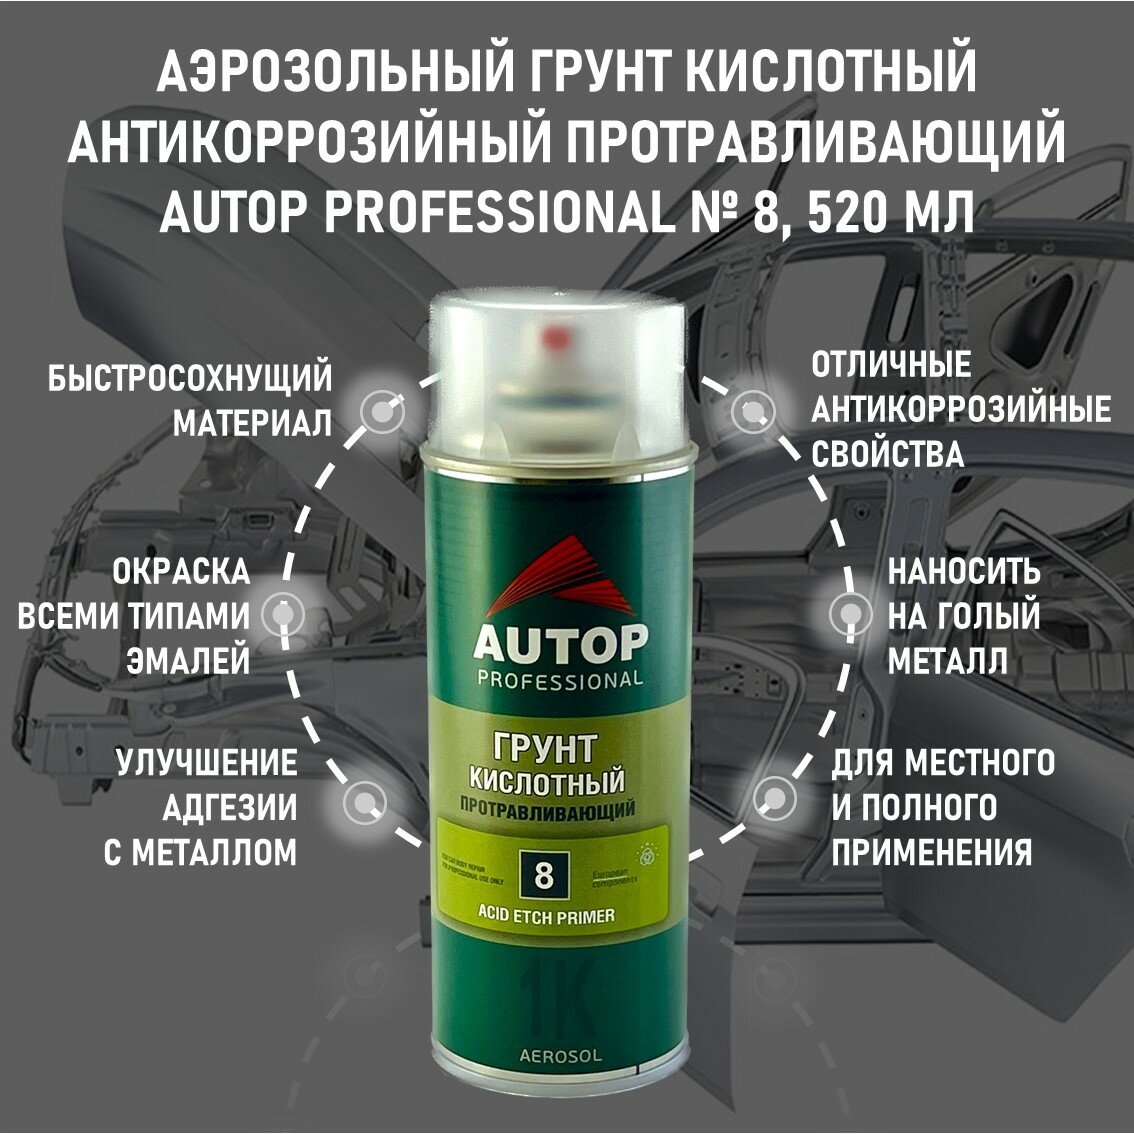 AP008 Грунт "Autop" Кислотный Протравливающий №8 1К (Acid Etch Primer) аэрозольный, 520 мл - фотография № 11